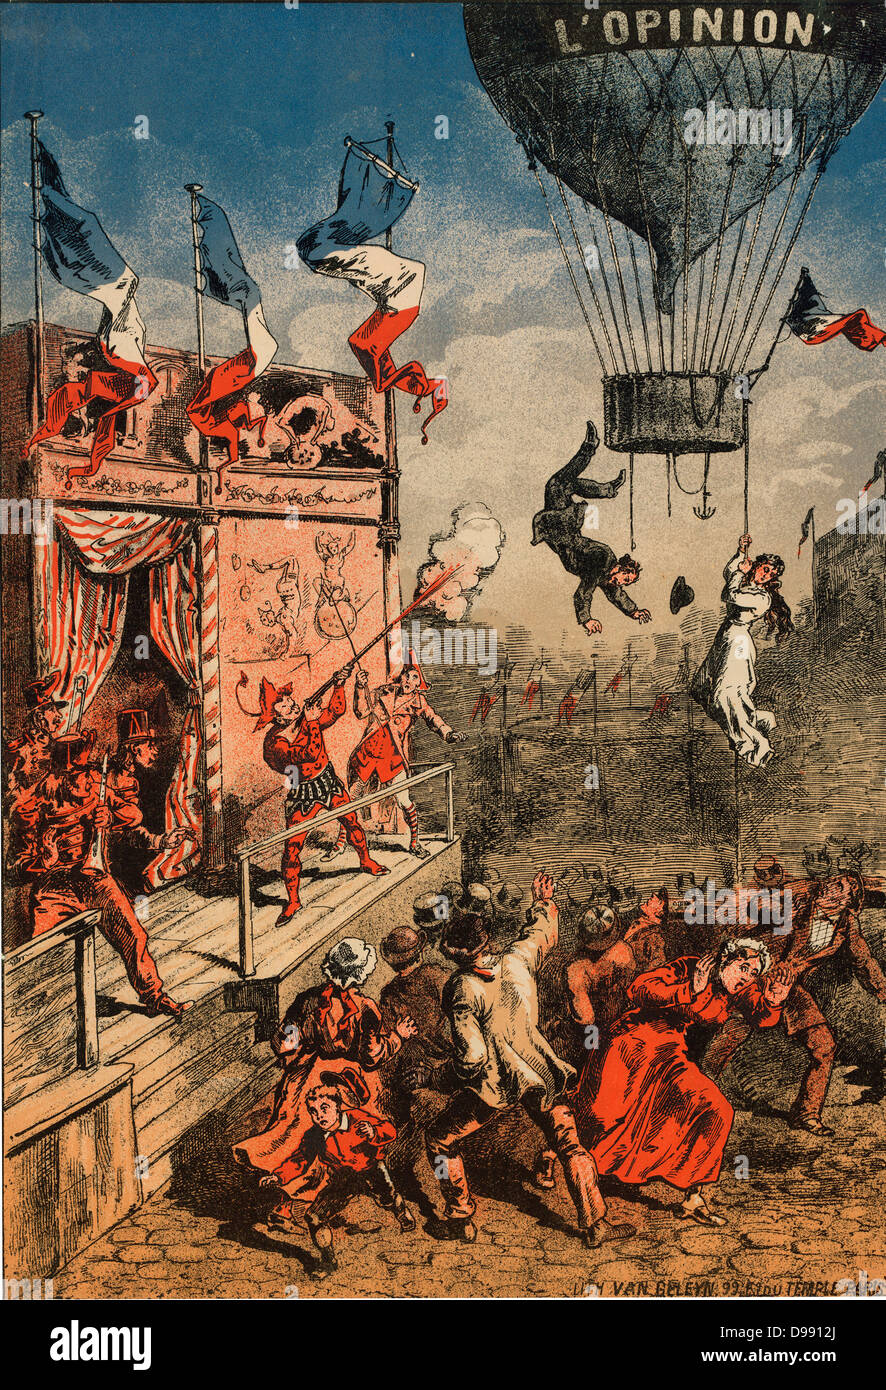 Impression d'humour d'un artiste de cirque sur une scène extérieure à tirer sur un ballon, marqués 'L'opinion', comme un homme saute de la télécabine et une femme s'accroche à une corde, 1870-1900. L'aéronautique animation Ballooning Banque D'Images